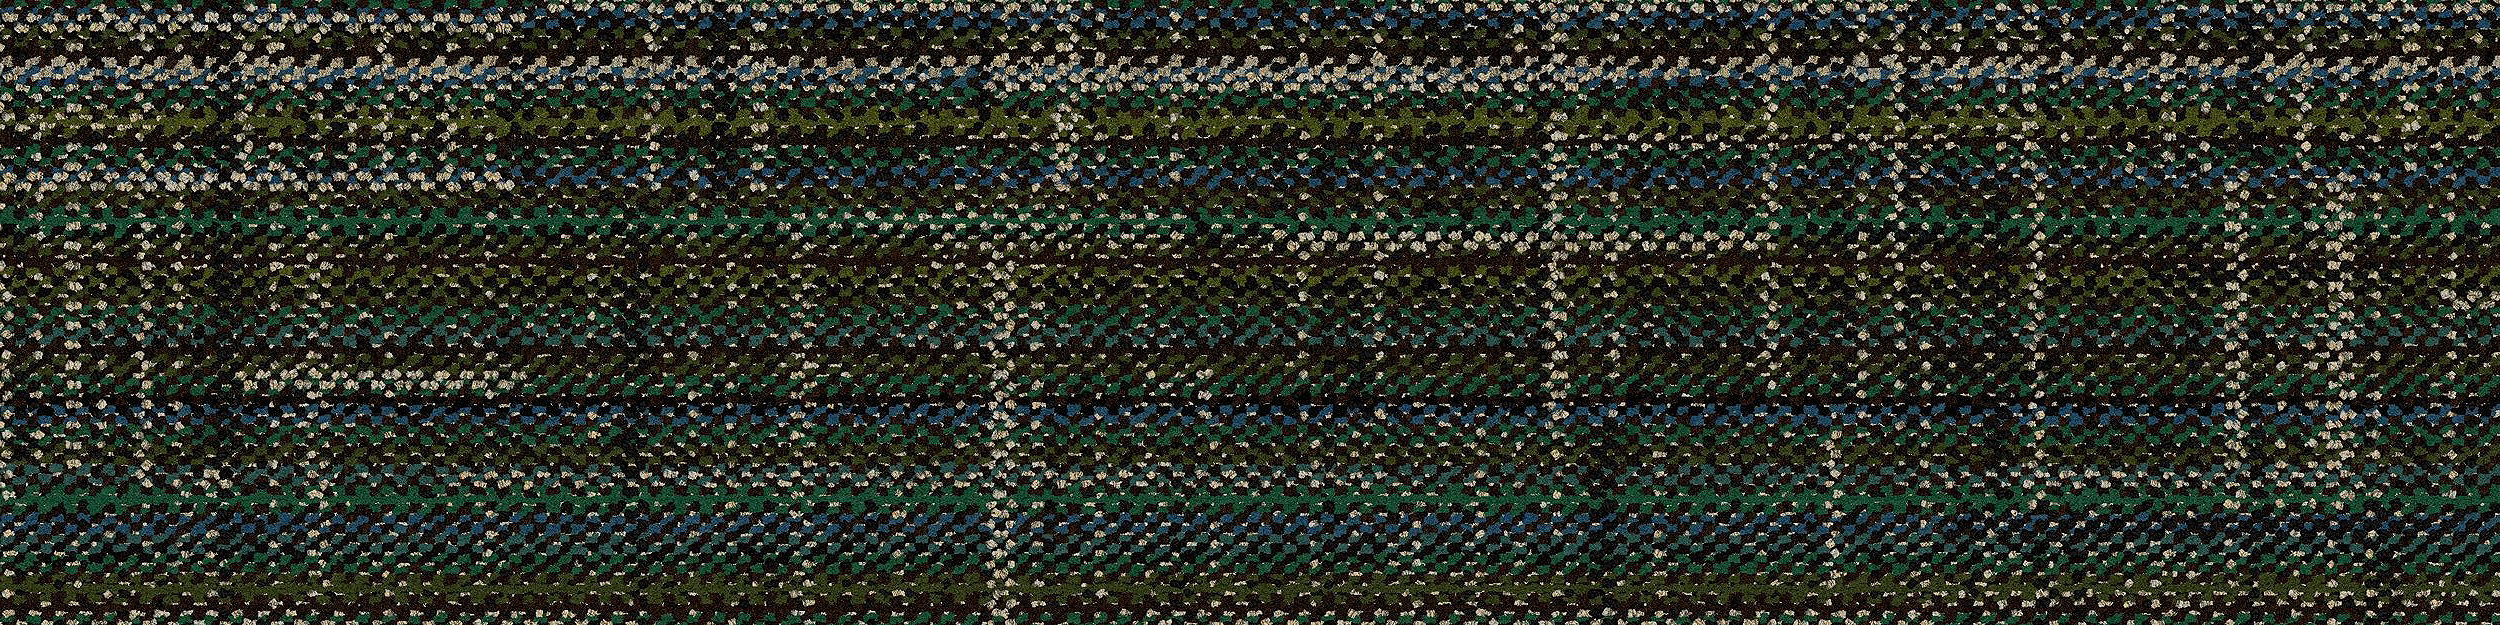 French Seams Carpet Tile In Avallon imagen número 6